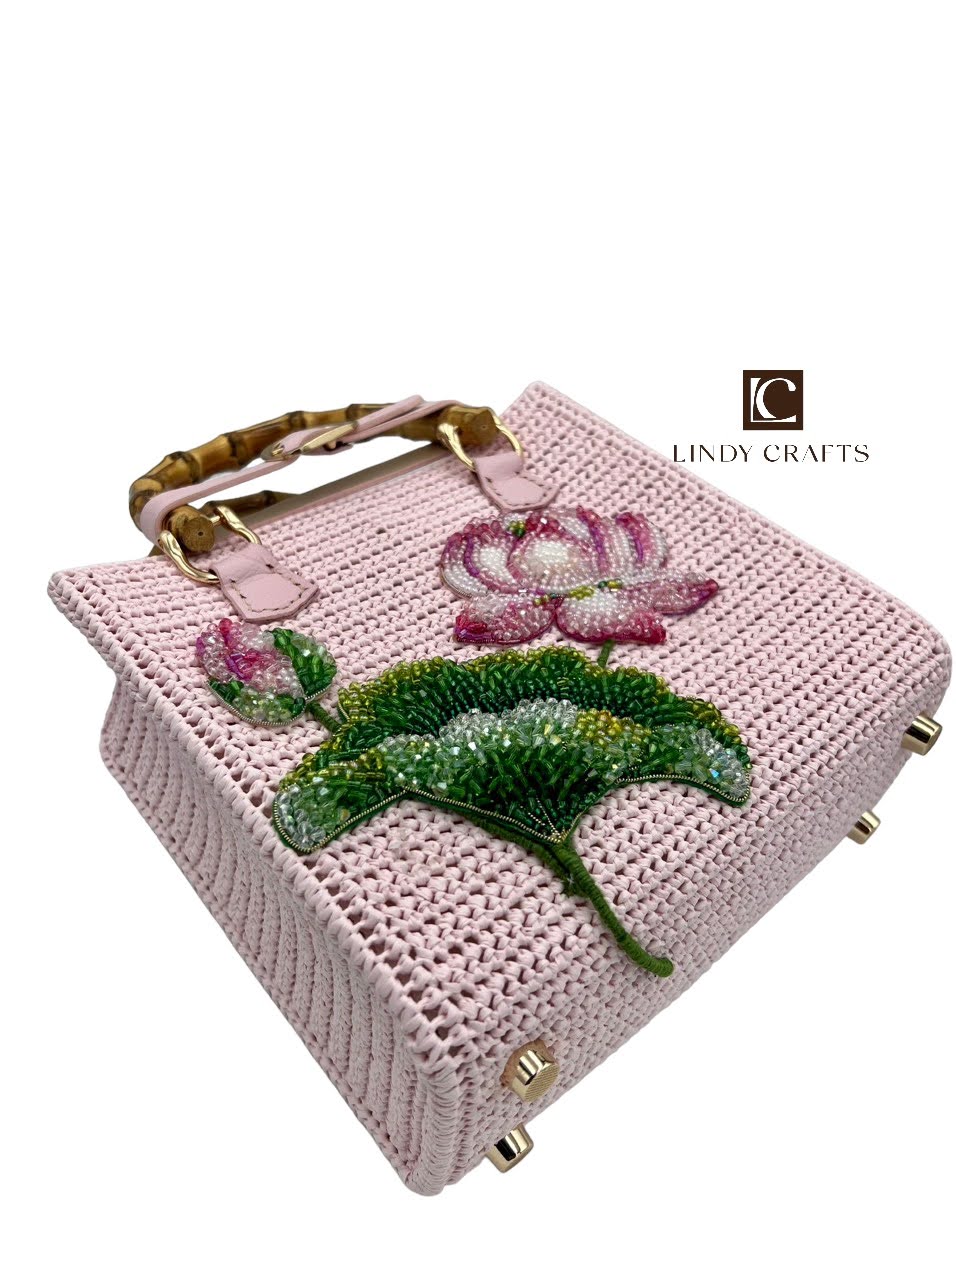 Customize Crochet Bag - Lotus flower - Palm Leaf Natural Fiber Bag - Made to order